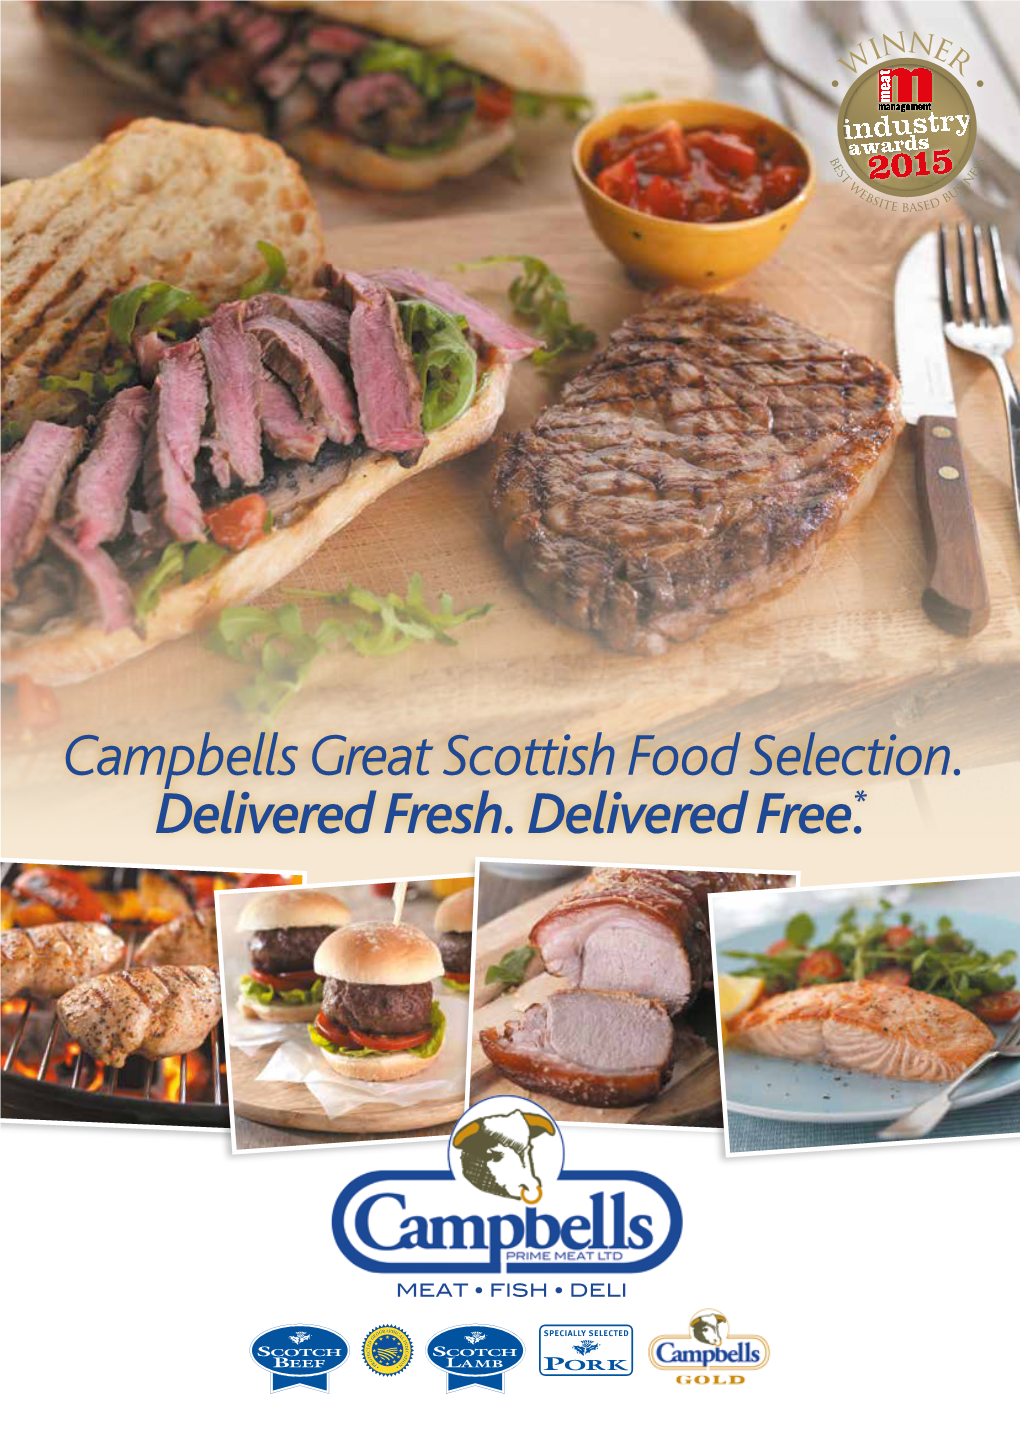 Campbells Great Scottish Food Selection. Delivered Fresh